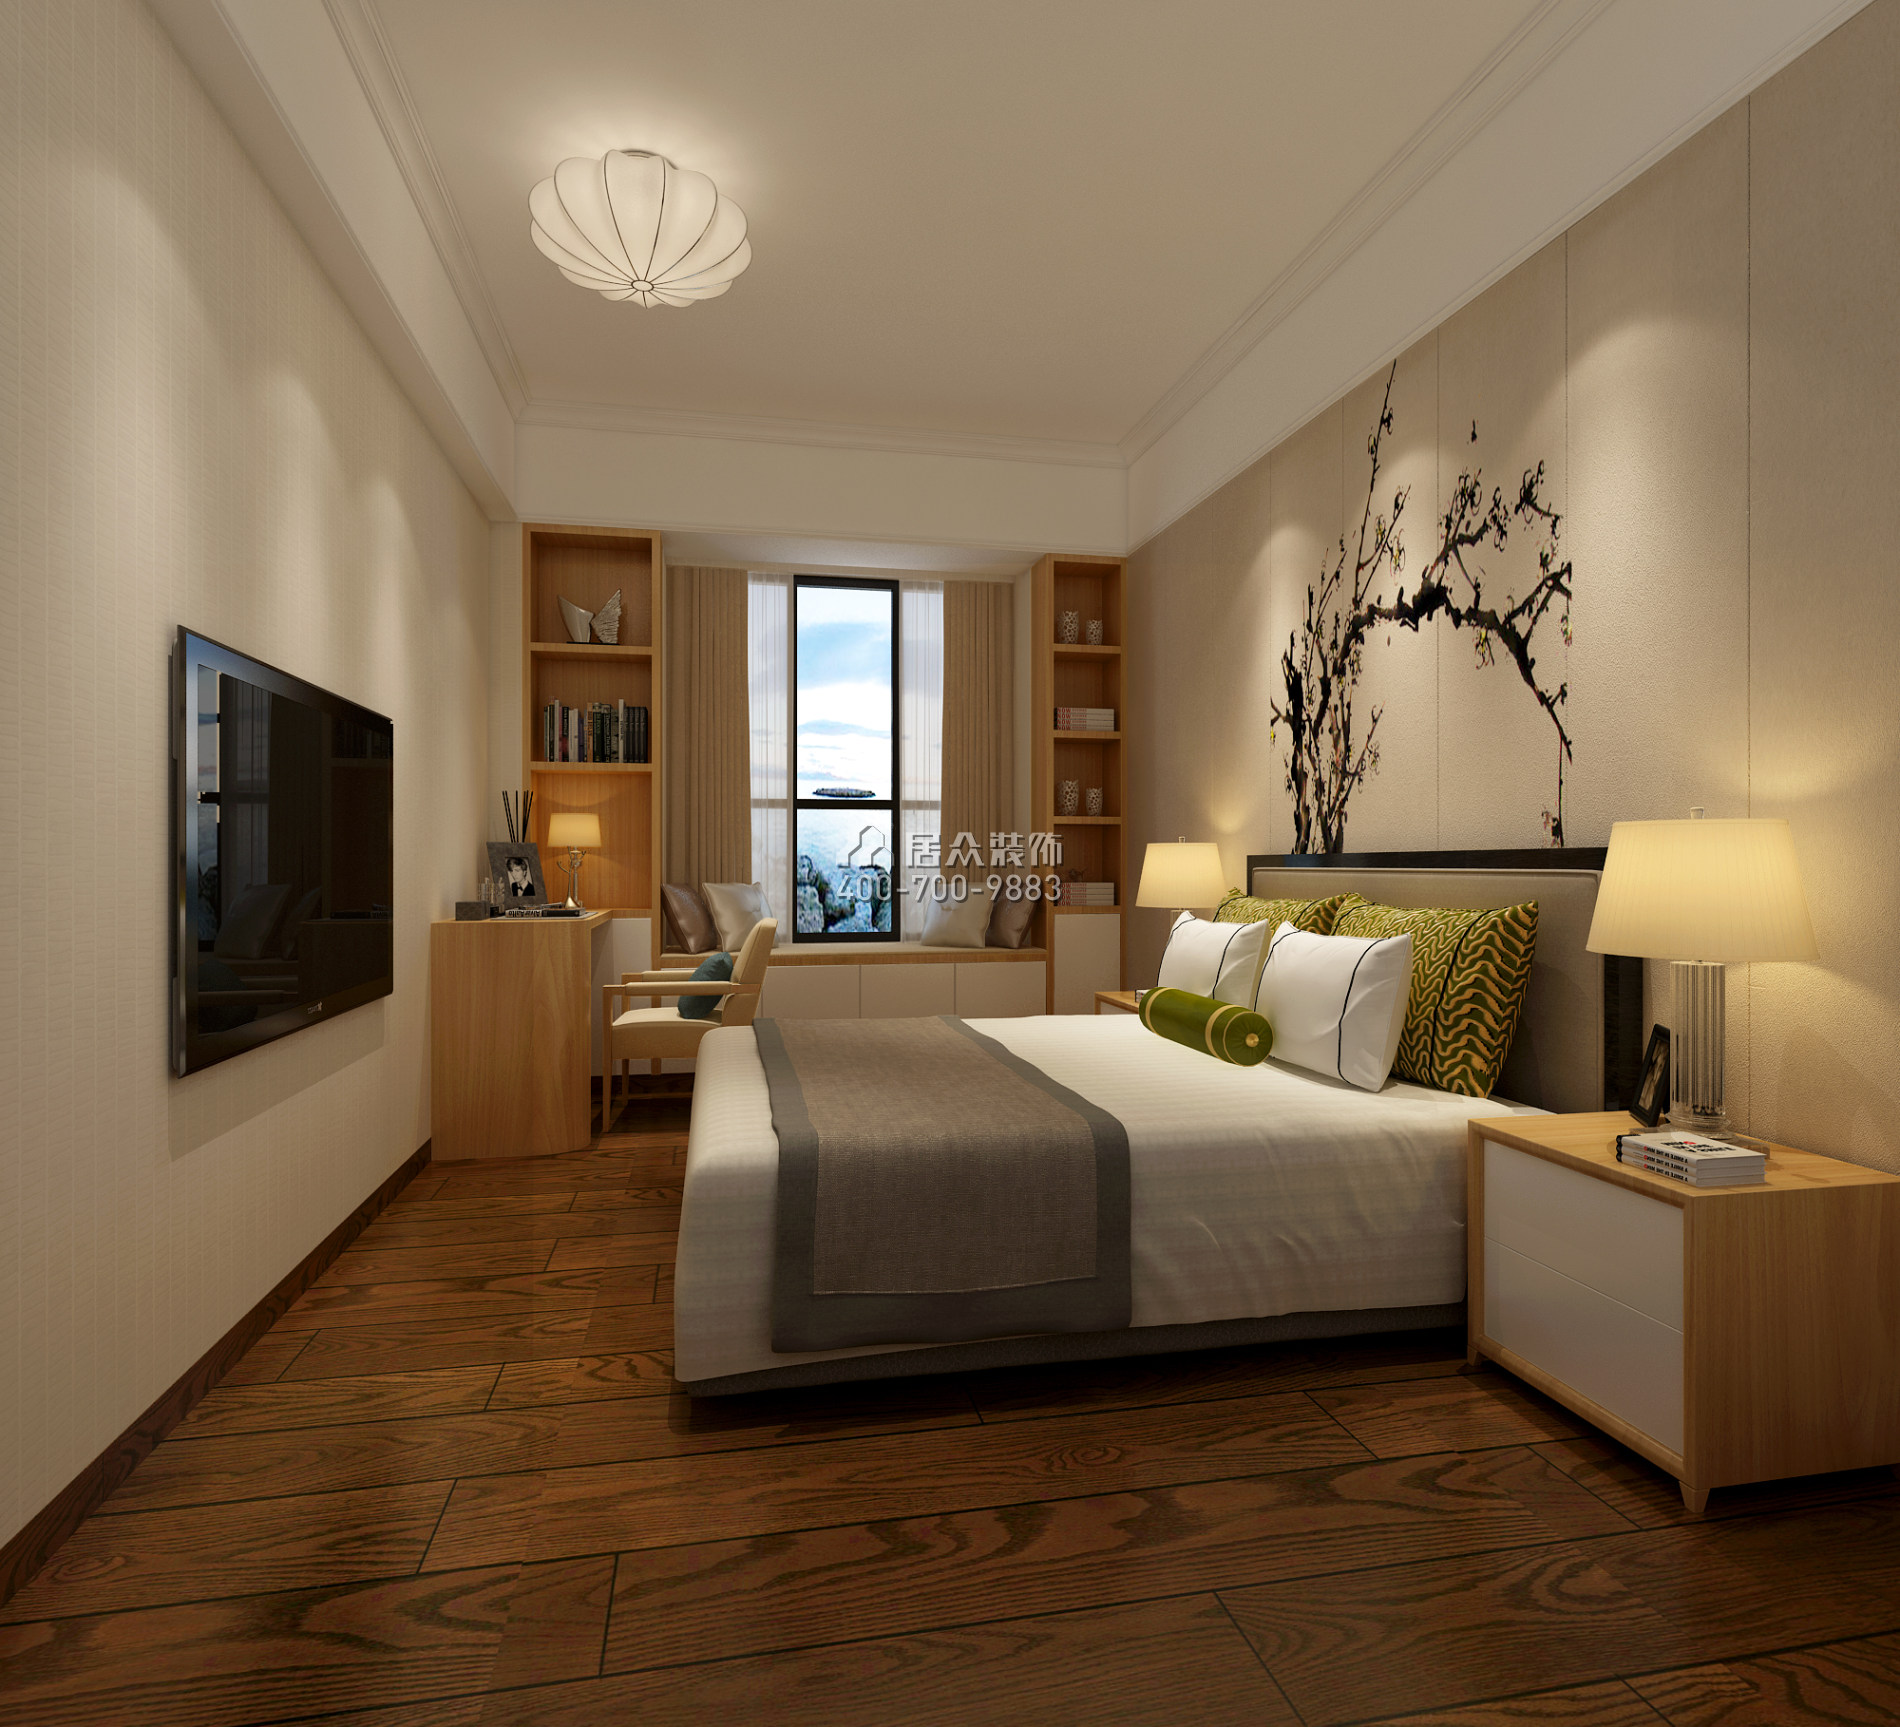 中倫東海岸121平方米現代簡約風格平層戶型臥室裝修效果圖